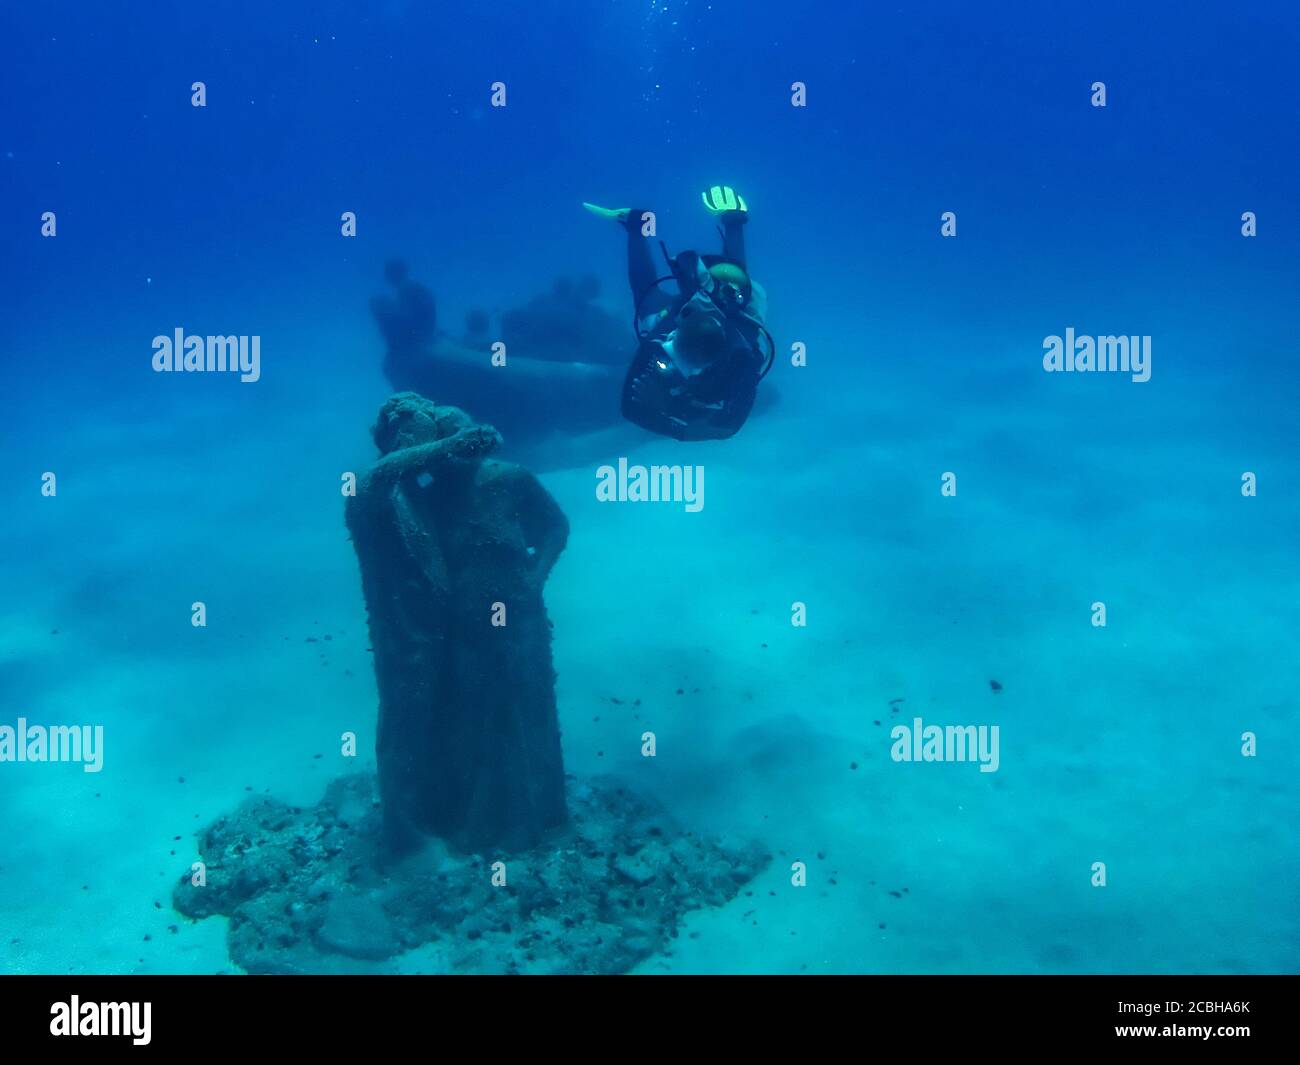 Plongée sous-marine montre la sculpture « desconectado » de Jason deCaires Taylor dans le musée sous-marin Museo Atlantico au large de Playa Blanca, Lanzarote. Banque D'Images